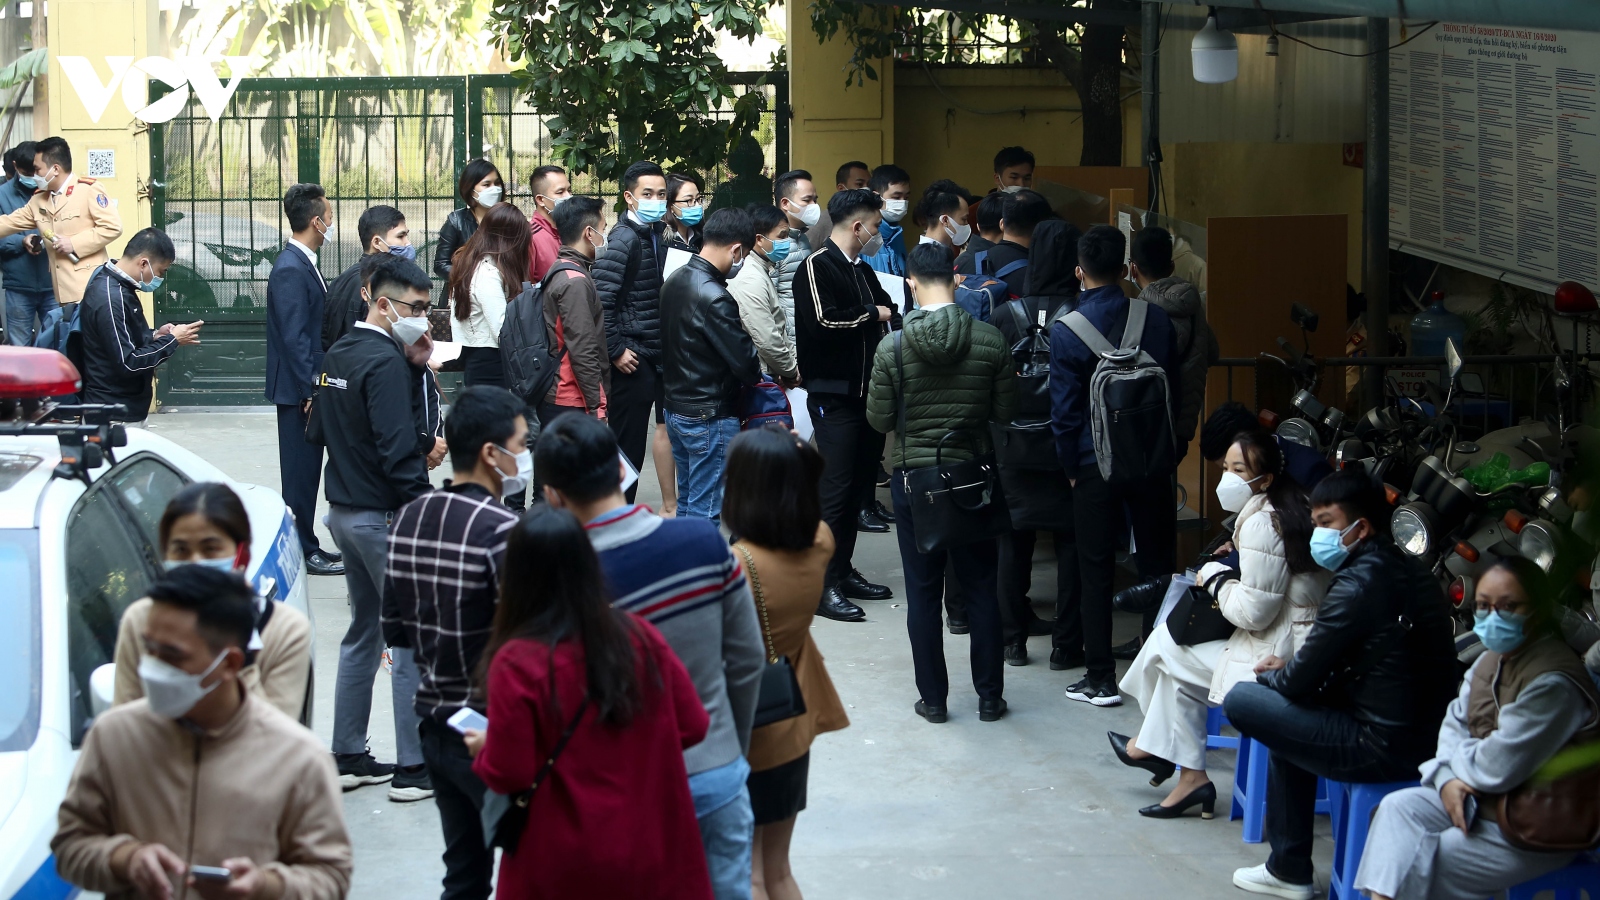 "Biển người" đổ về gây tình trạng lộn xộn tại các điểm đăng ký xe ở Hà Nội